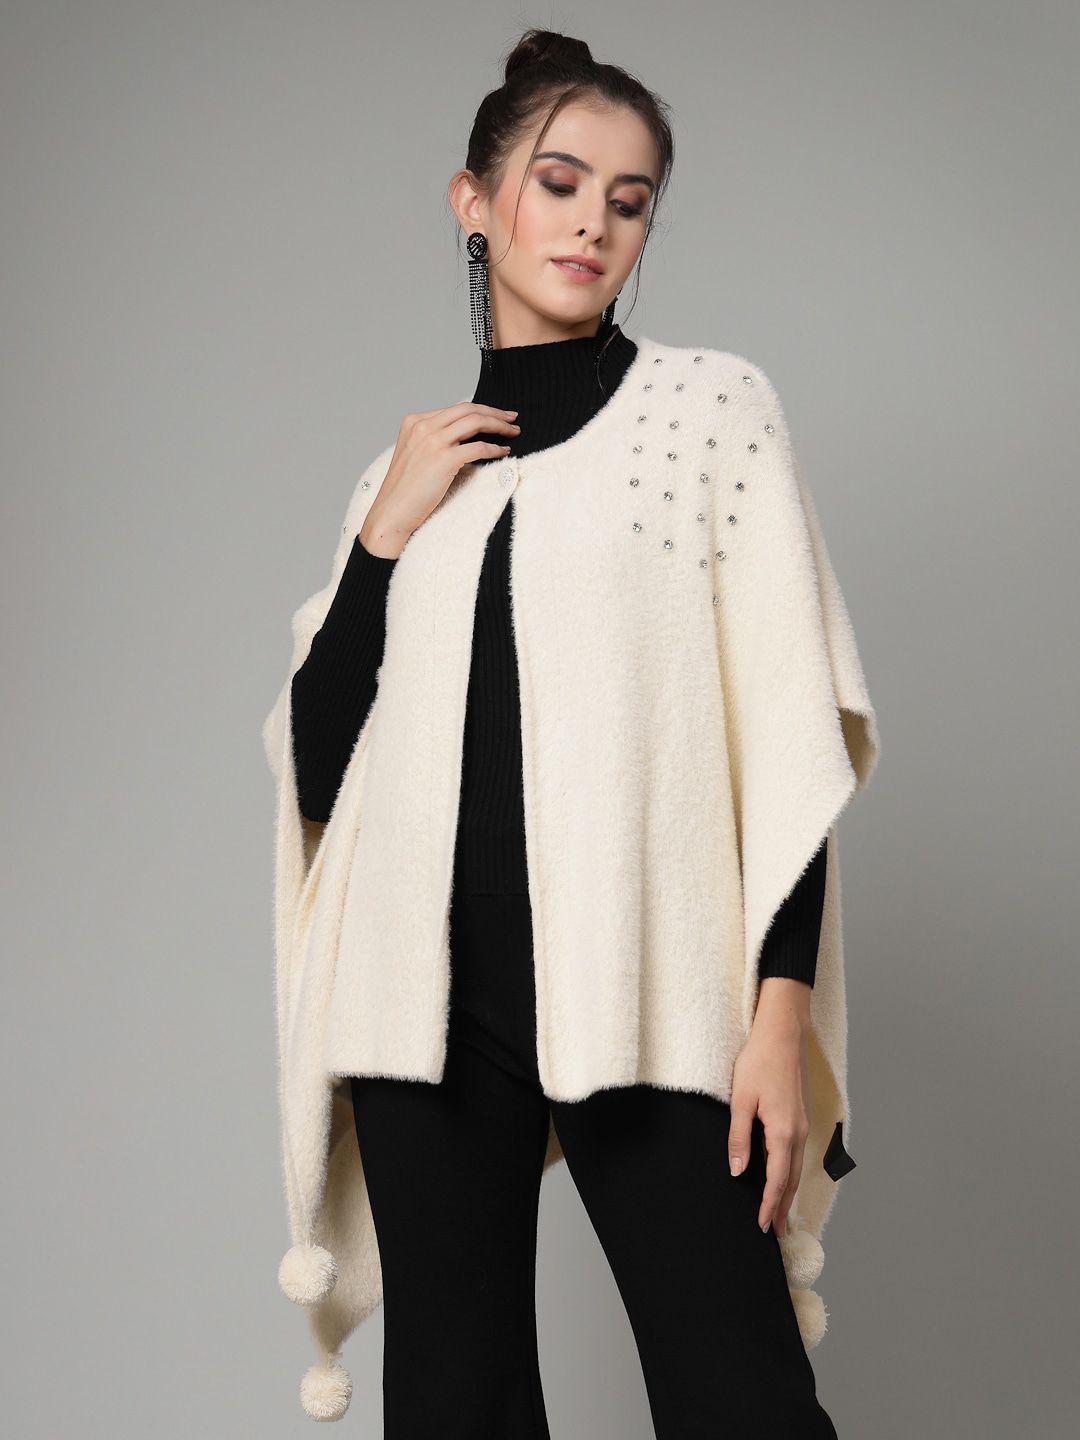 mafadeny asymmetric embellished short sleeves poncho sweater